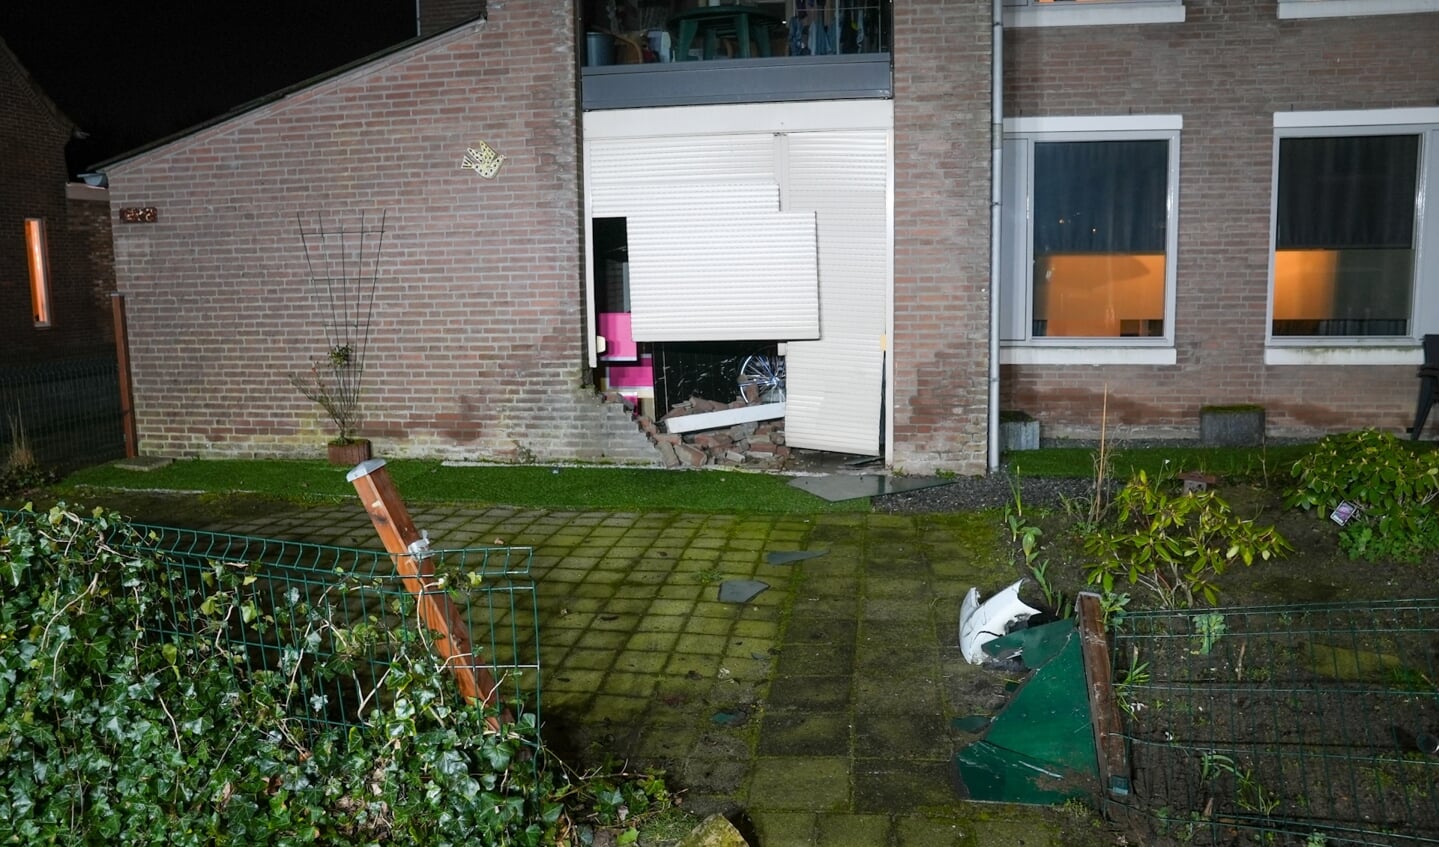 Incident aan de Joannes Zwijsenlaan in Oss.